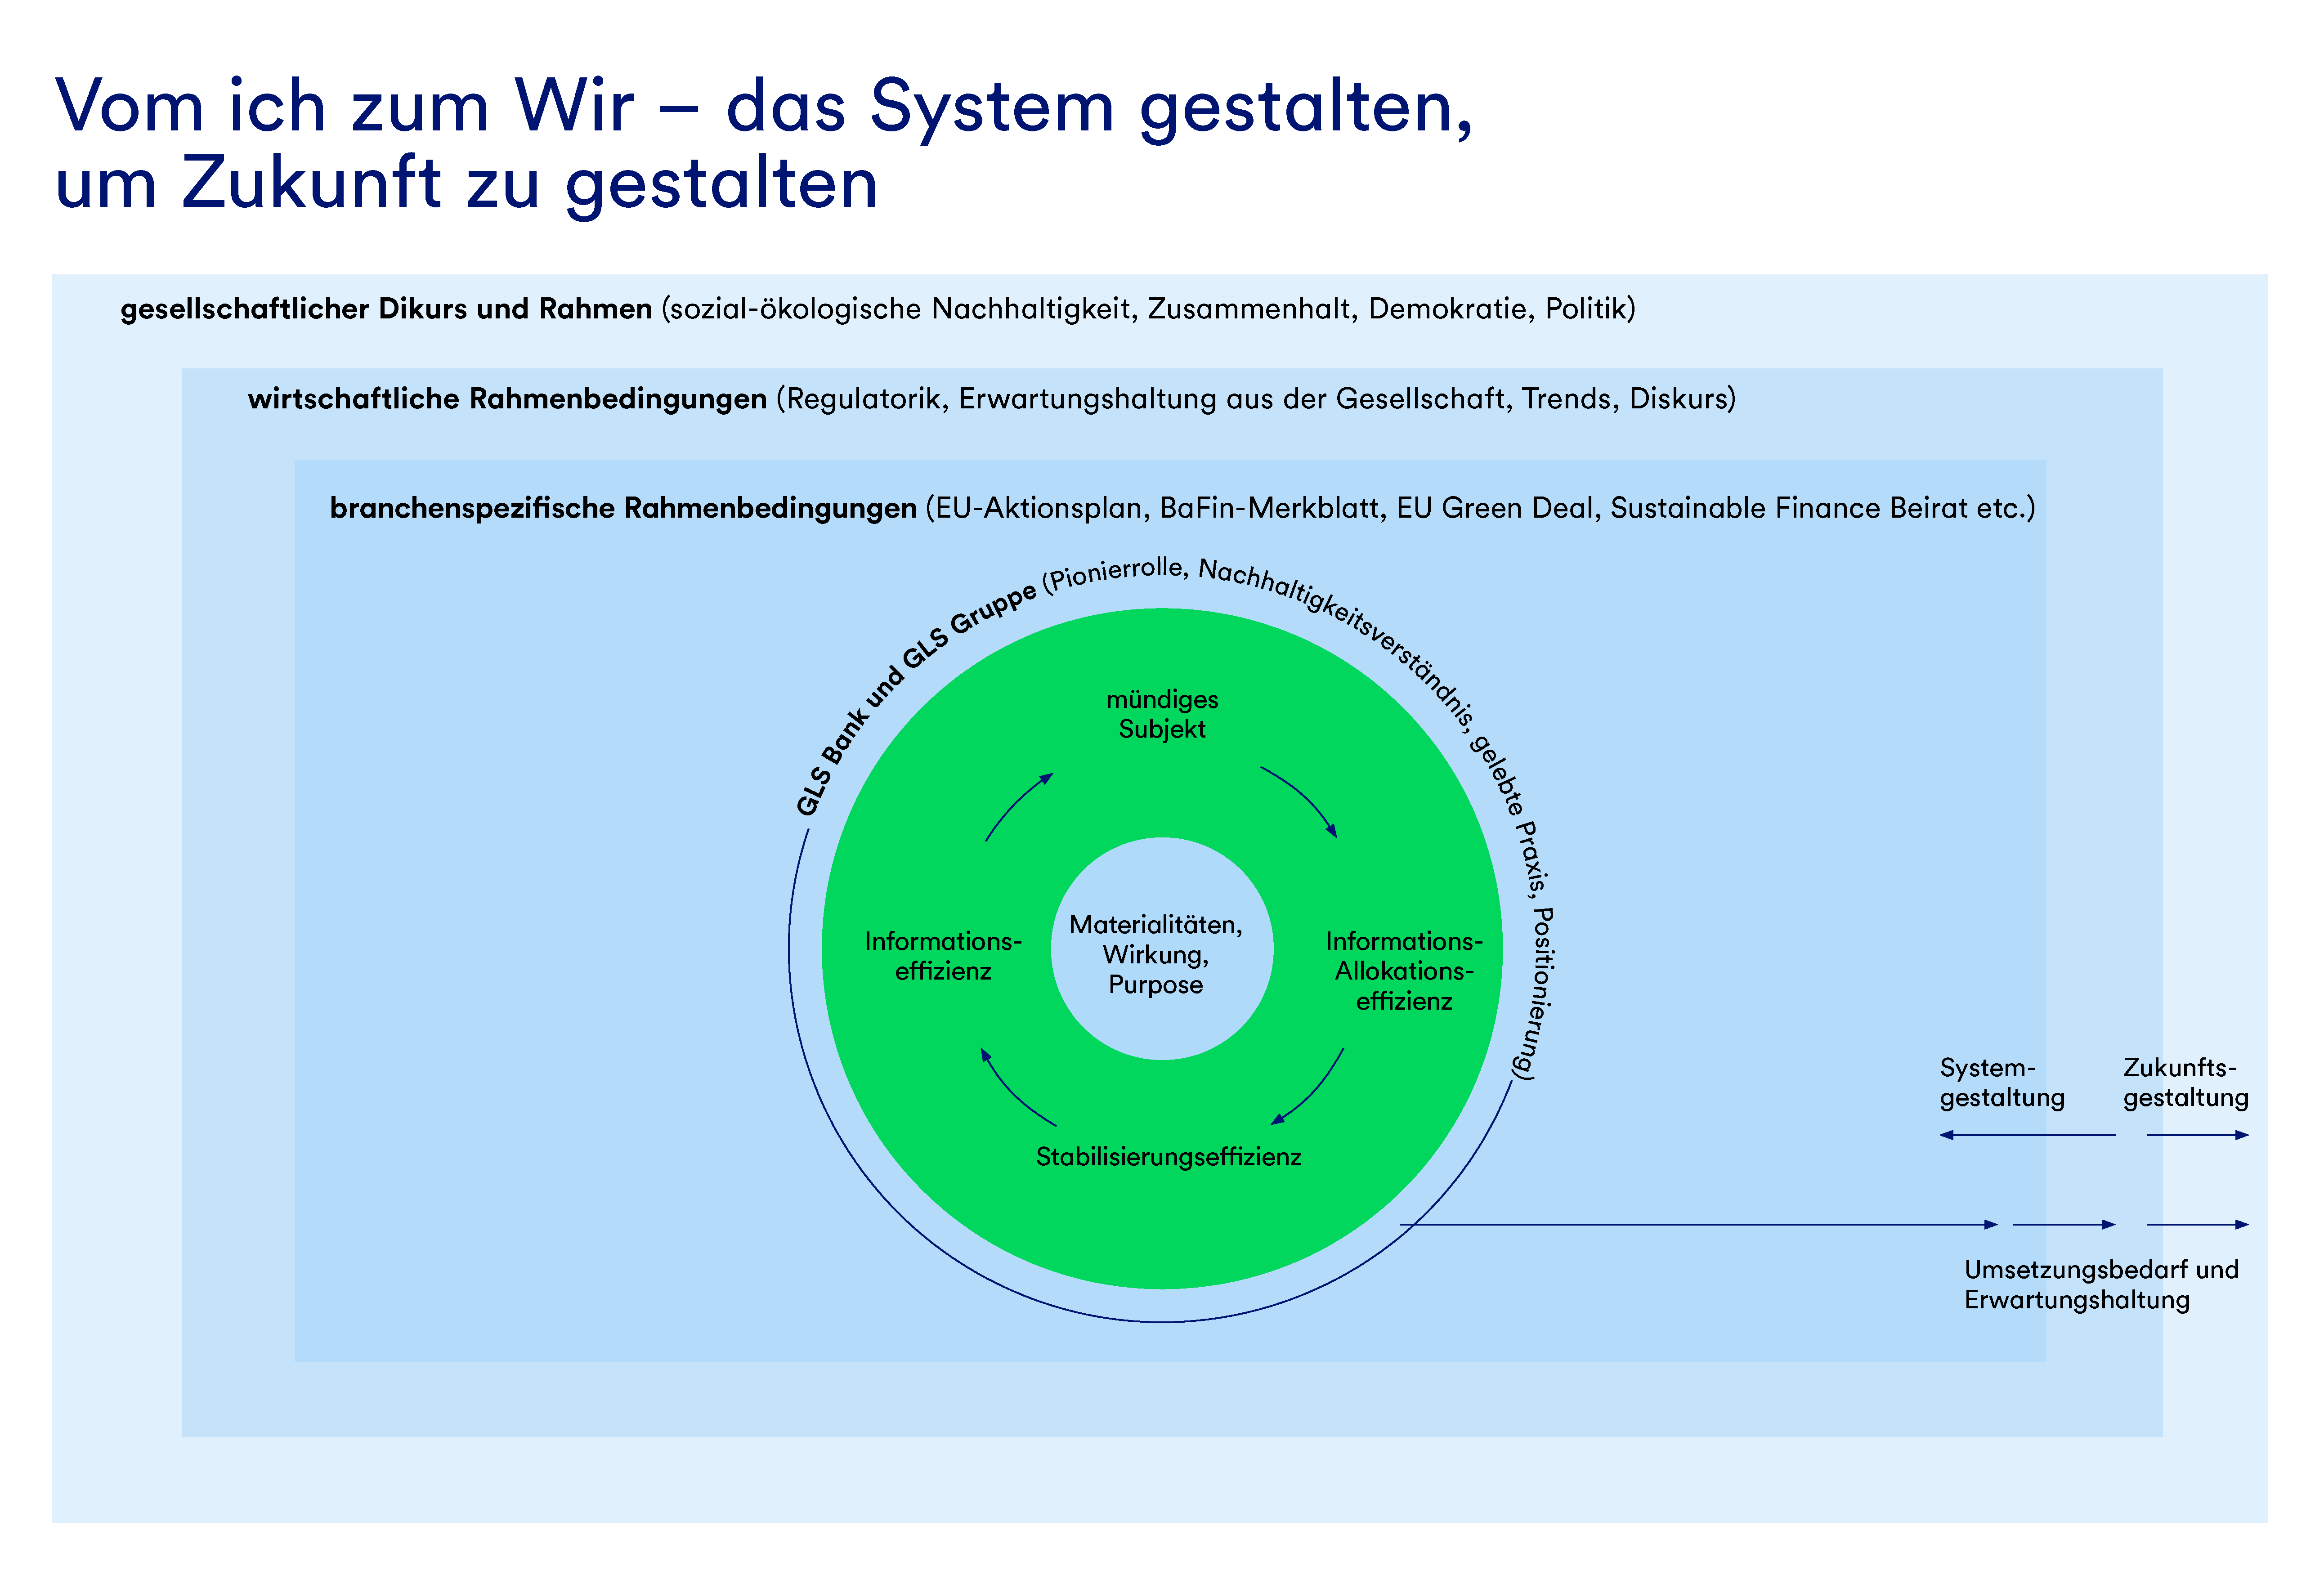 Eine Grafik mit dem Titel "Vom Ich zum Wir - das System gestalten um Zukunft zu gestalten". Hier wird dargestellt, wie die GLS Bank von ihrer Mikro- bis hin zur Makroebene durch ihr Handeln das System zu nachhaltigen Finanzen verändern möchte.